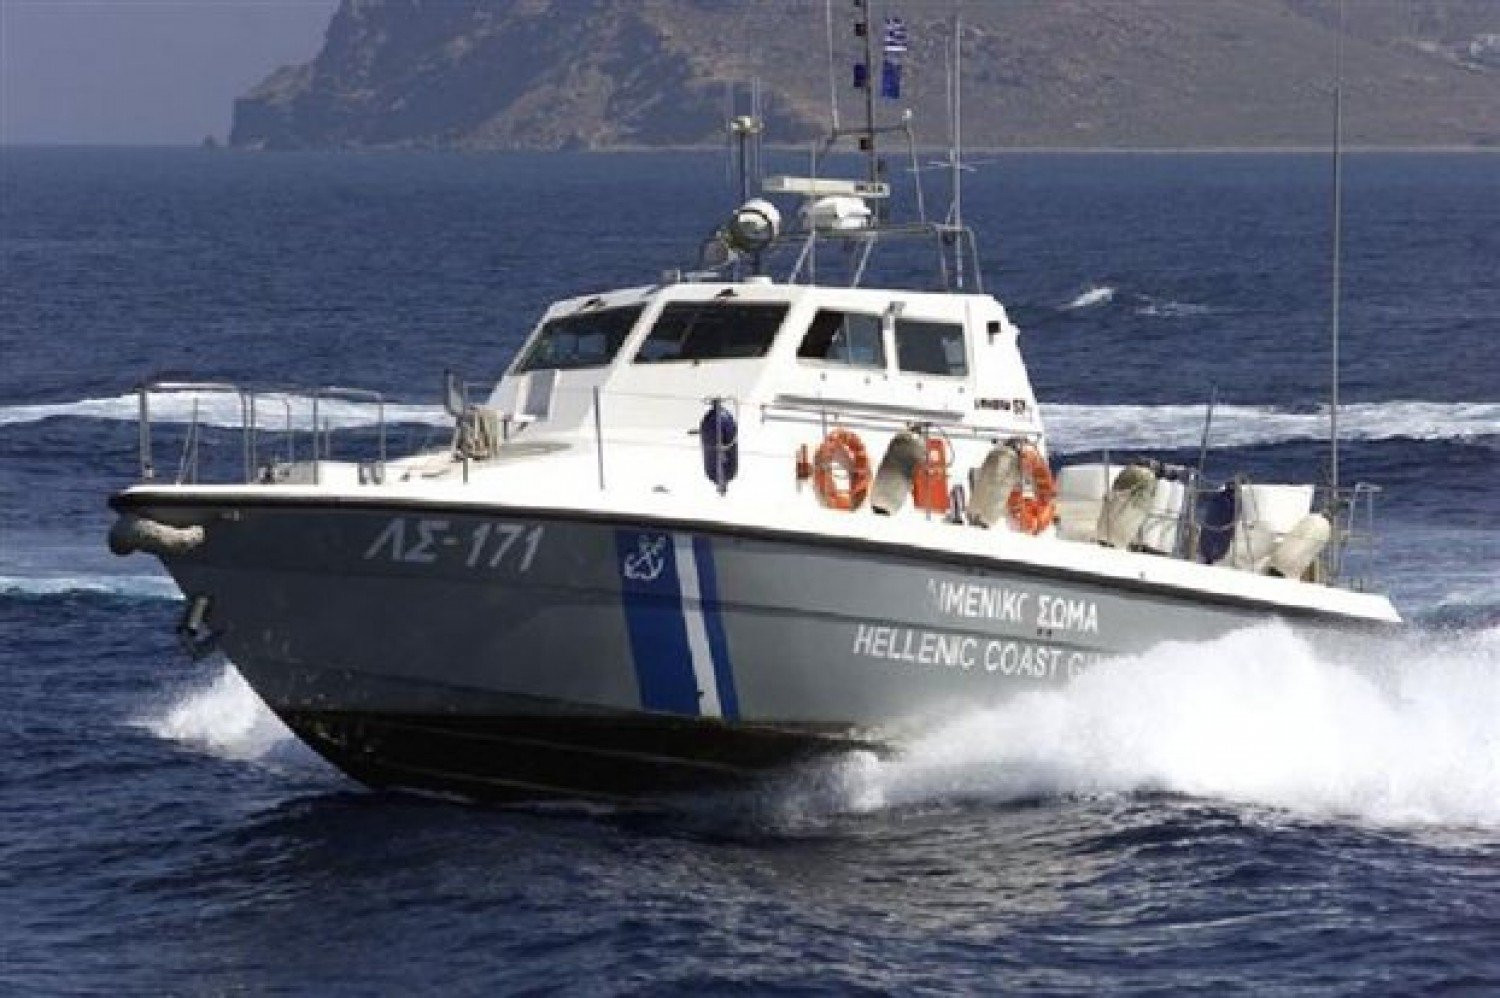 Ηράκλειο: Αναποδογύρισε σκάφος – Σε κίνδυνο 7 άνθρωποι, ανάμεσά τους και παιδιά